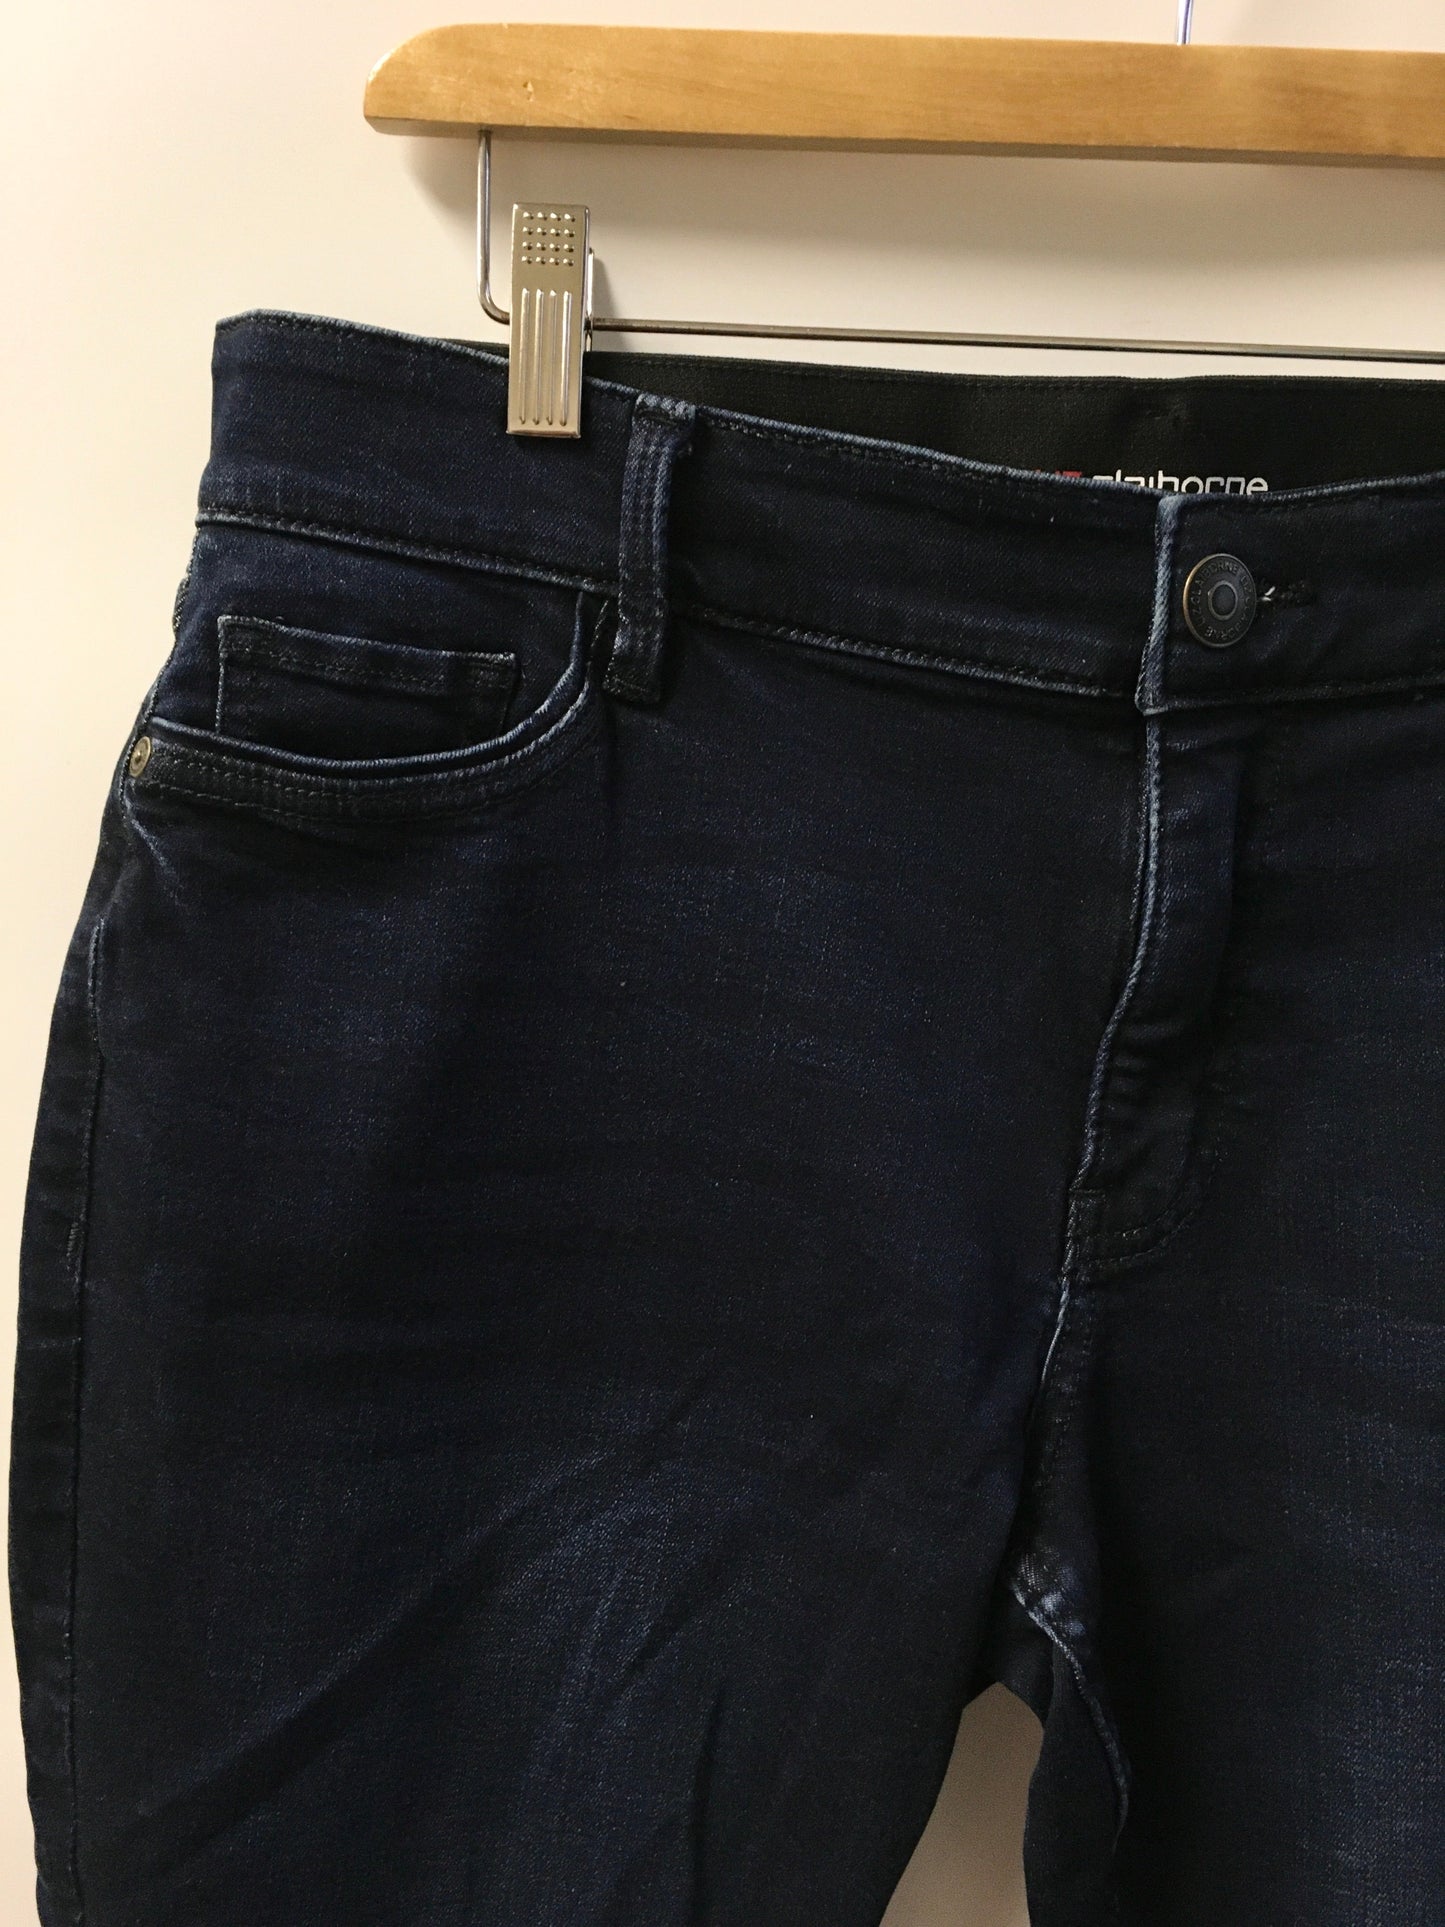 Jeans Skinny By Liz Claiborne  Size: 12petite